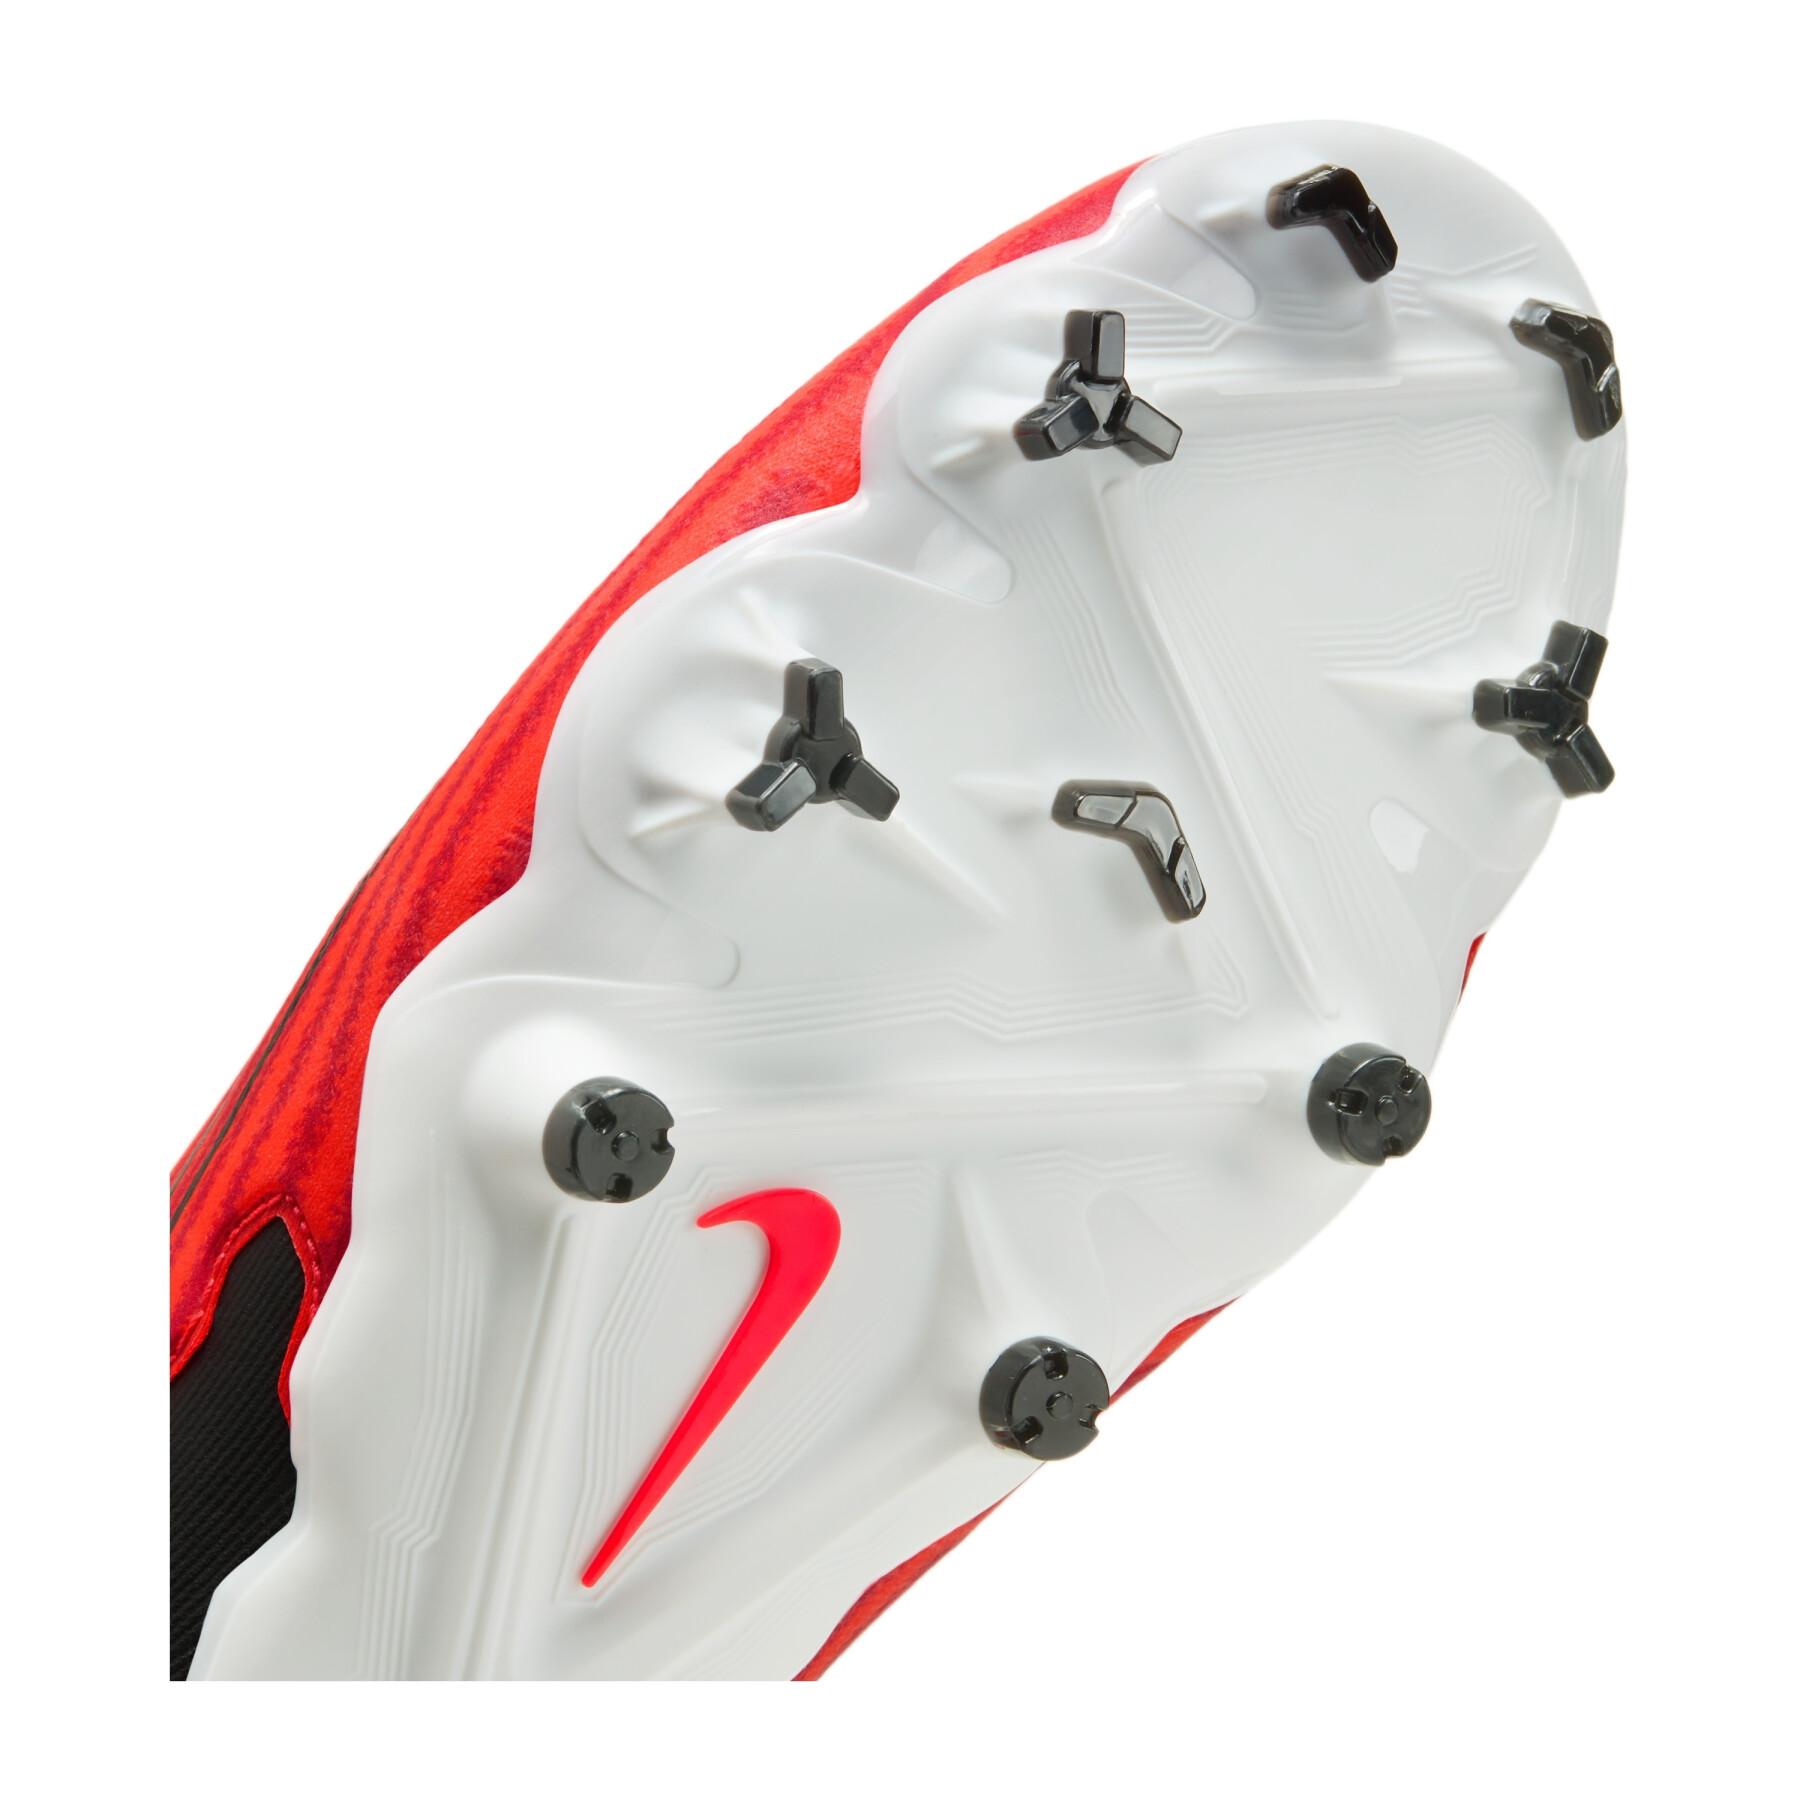 Scarpe da calcio Nike Phantom GX Pro FG - Ready Pack